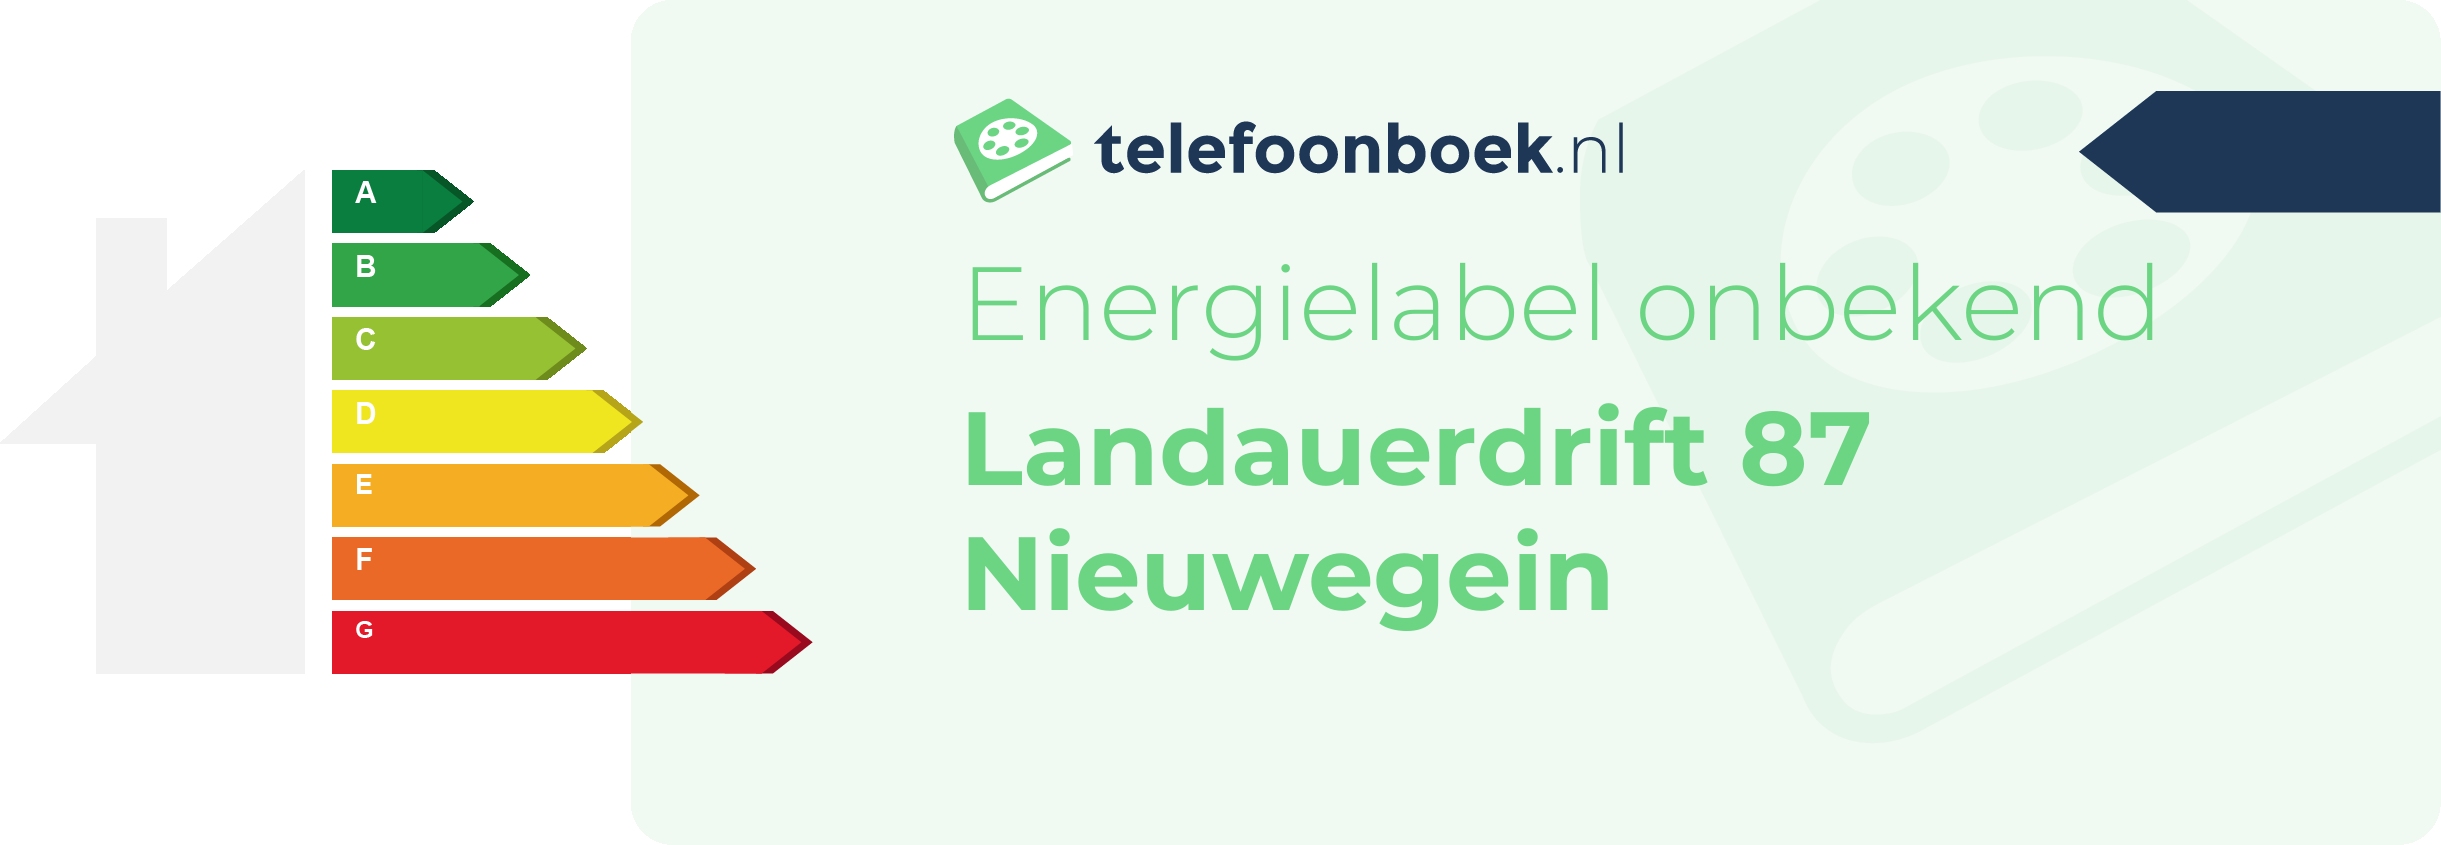 Energielabel Landauerdrift 87 Nieuwegein